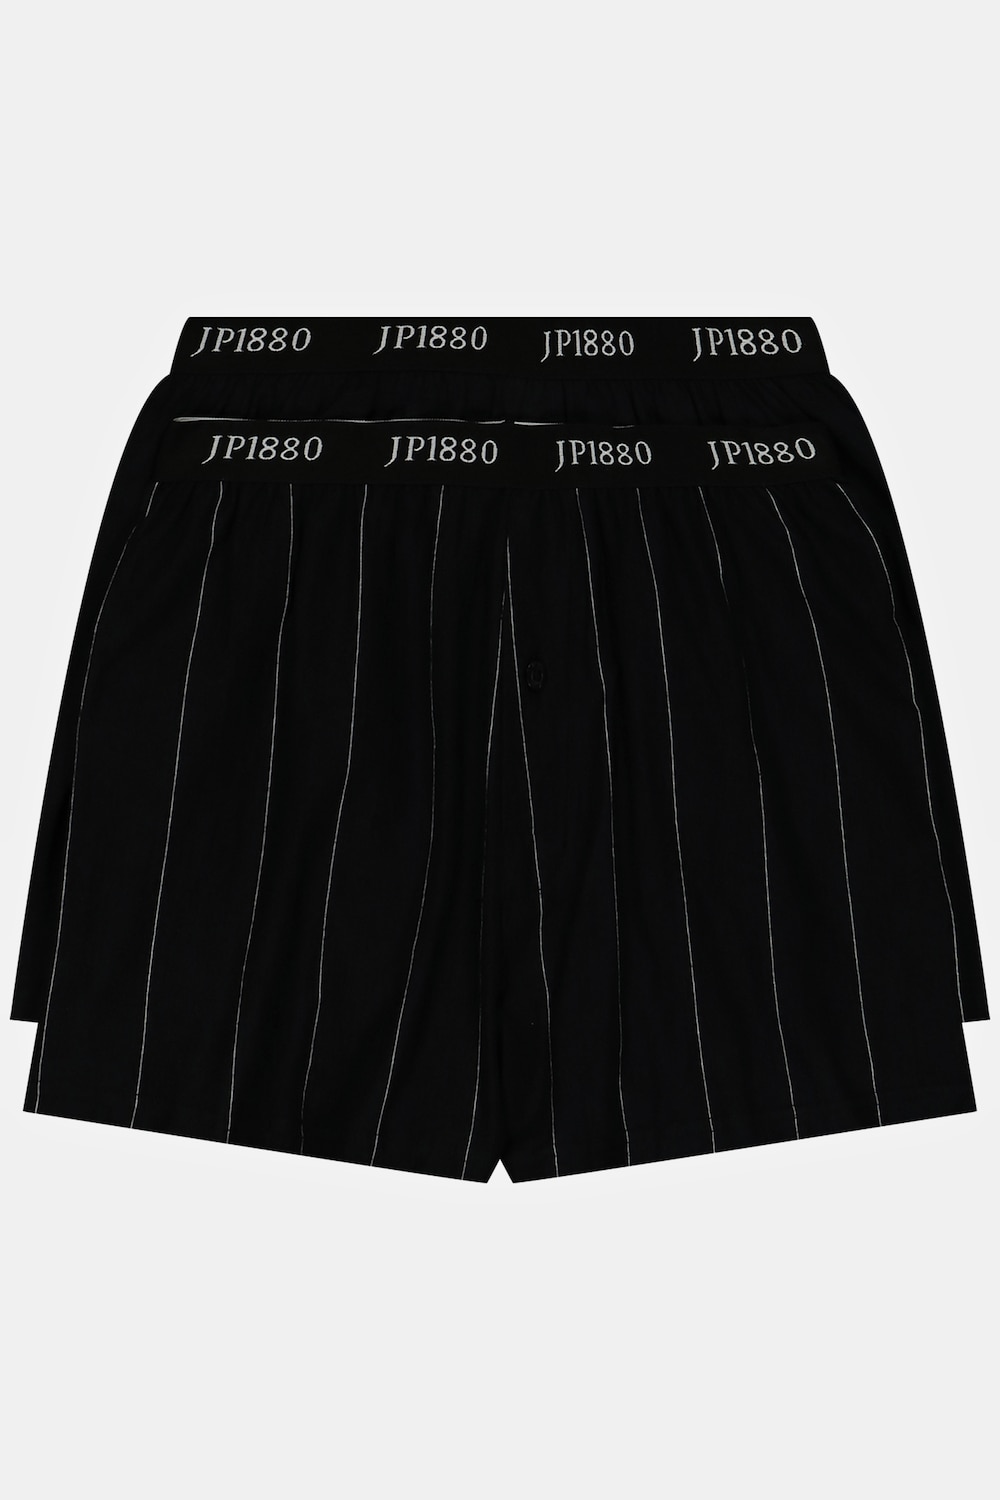 grandes tailles lot de 2 boxers flexnamic®, hommes, noir, taille: xl, coton, jp1880